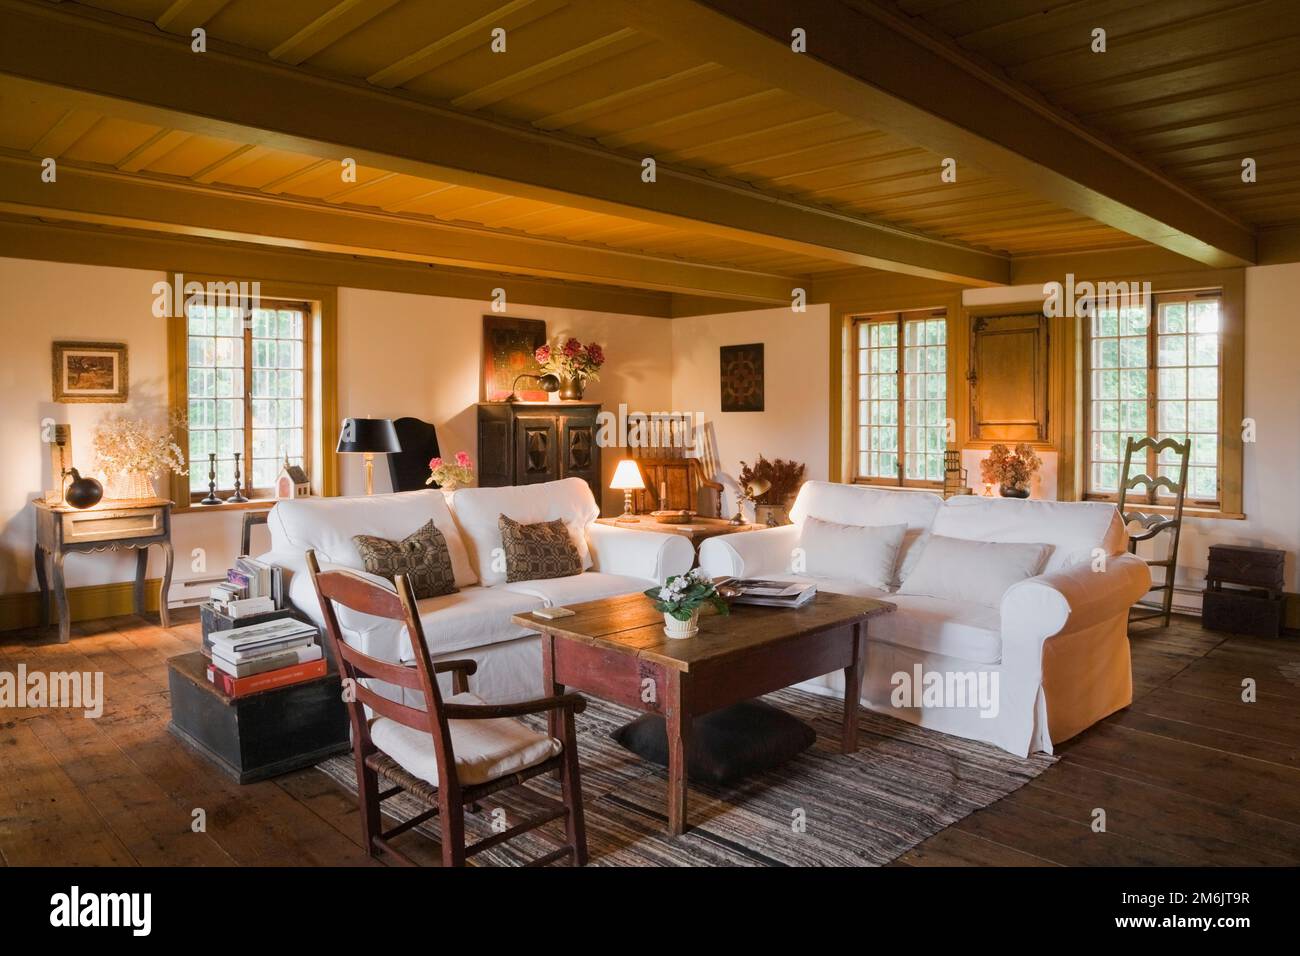 Divani tappezzati in tessuto bianco nel soggiorno all'interno della vecchia casa stile cottage regime francese del 1752. Foto Stock